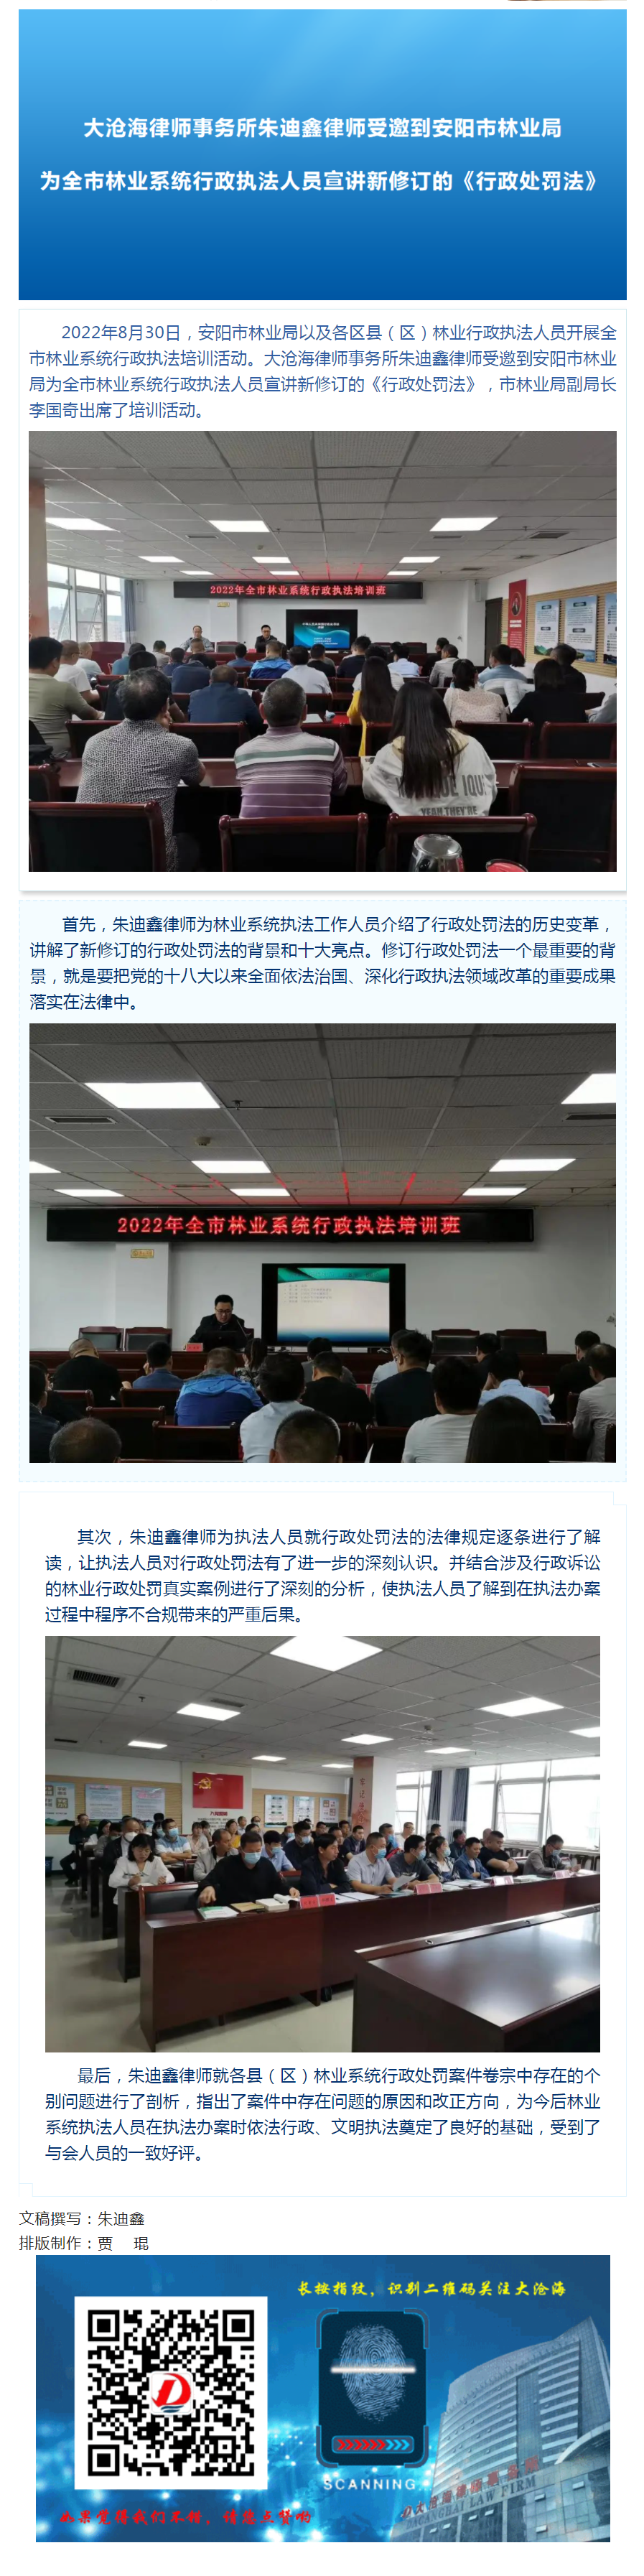 大沧海律师事务所朱迪鑫律师受邀到安阳市林业局为全市林业系统行政执法人员宣讲新修订的《行政处罚法》